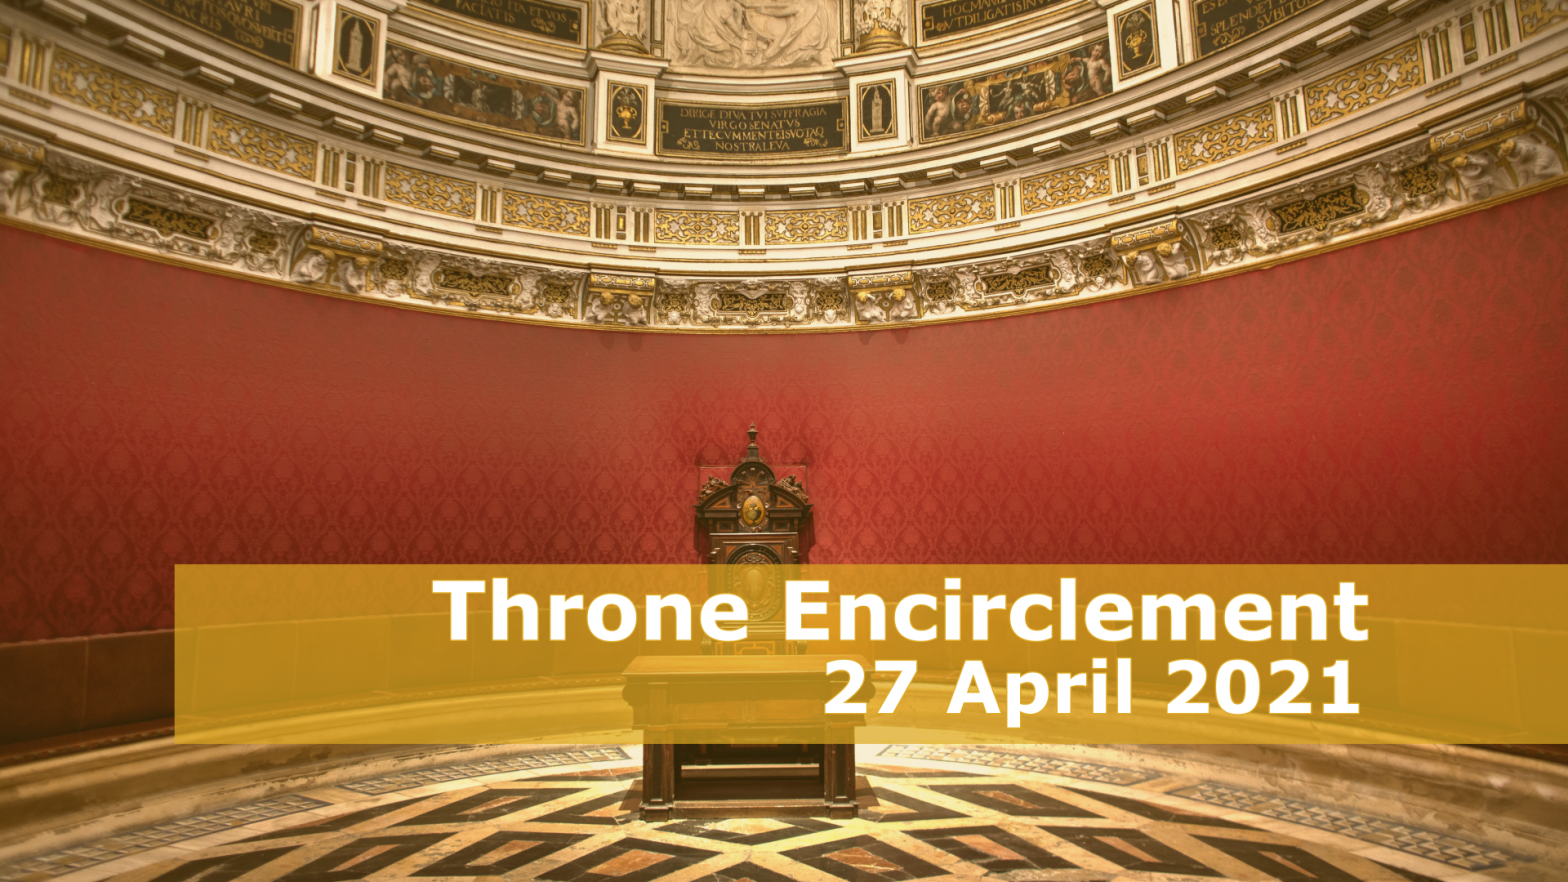 Throne Encirclement